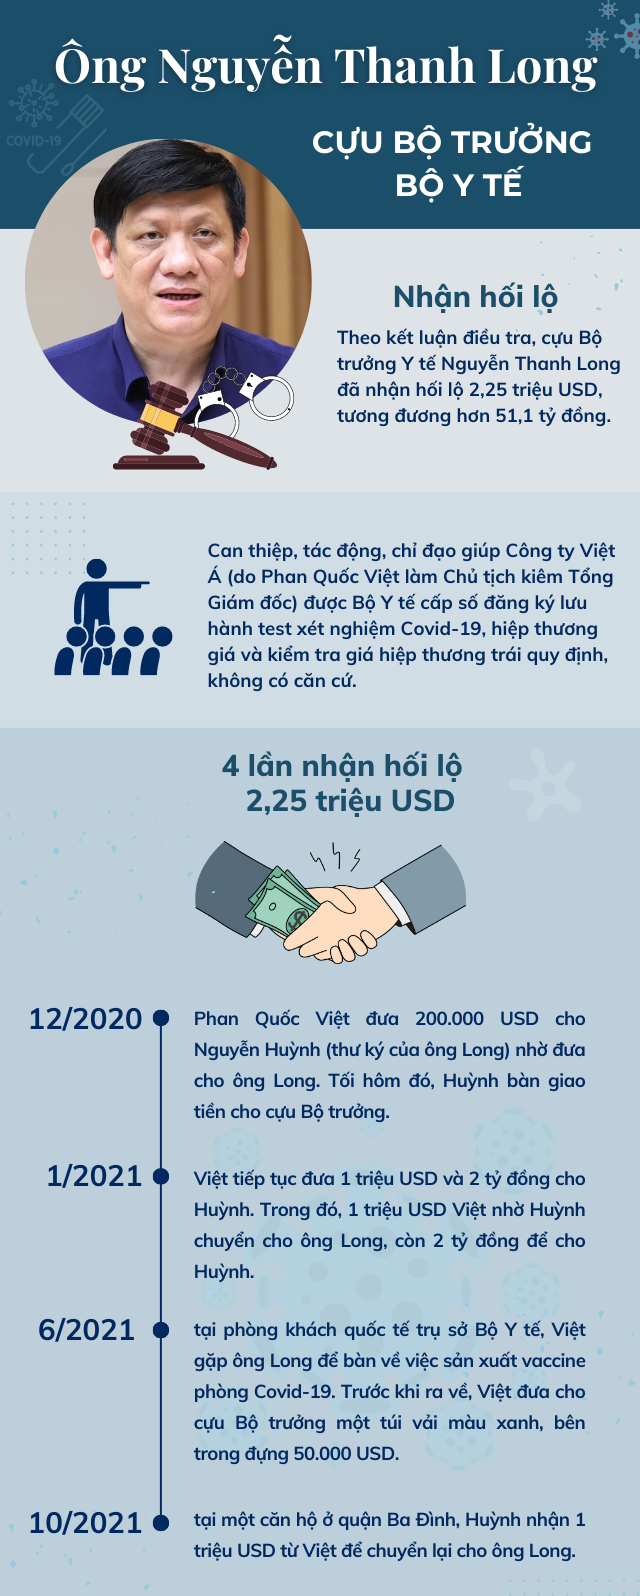 Infographic: 3 cựu Ủy viên Trung ương bị đề nghị truy tố trong vụ Việt Á - Ảnh 1.